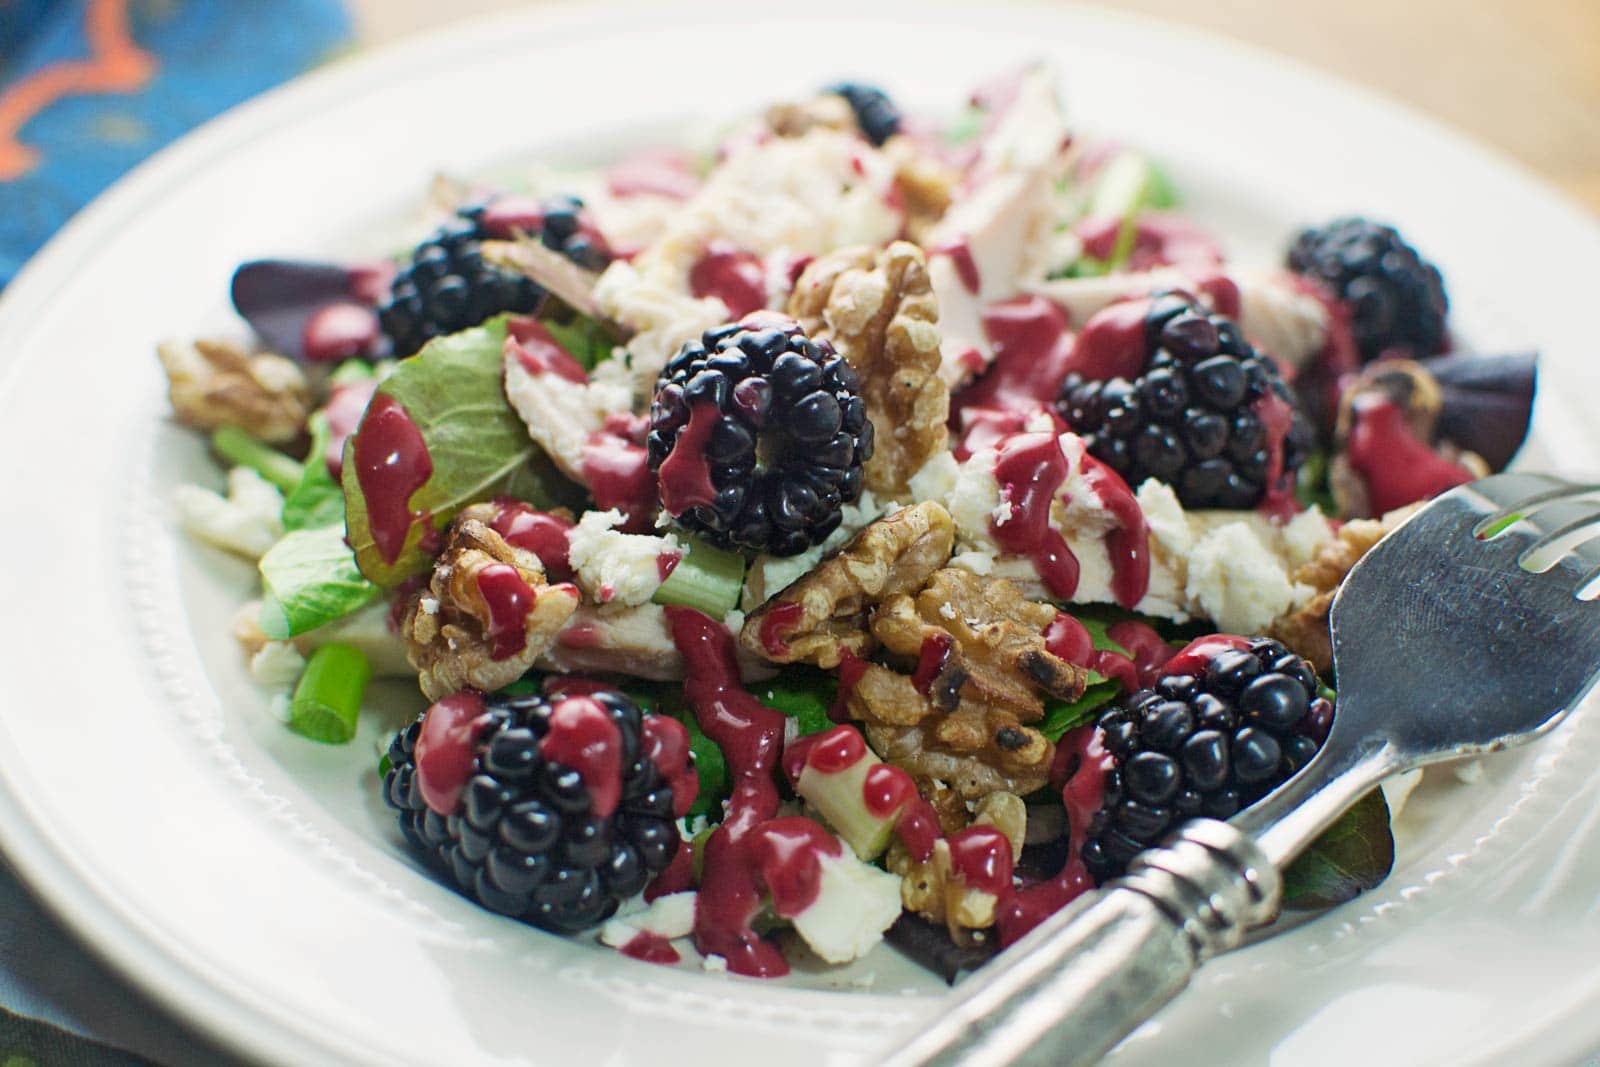 Blackberry Balsamic Vinaigrette with Chicken Feta Salad - @LittleFiggyFood - #Blackberries